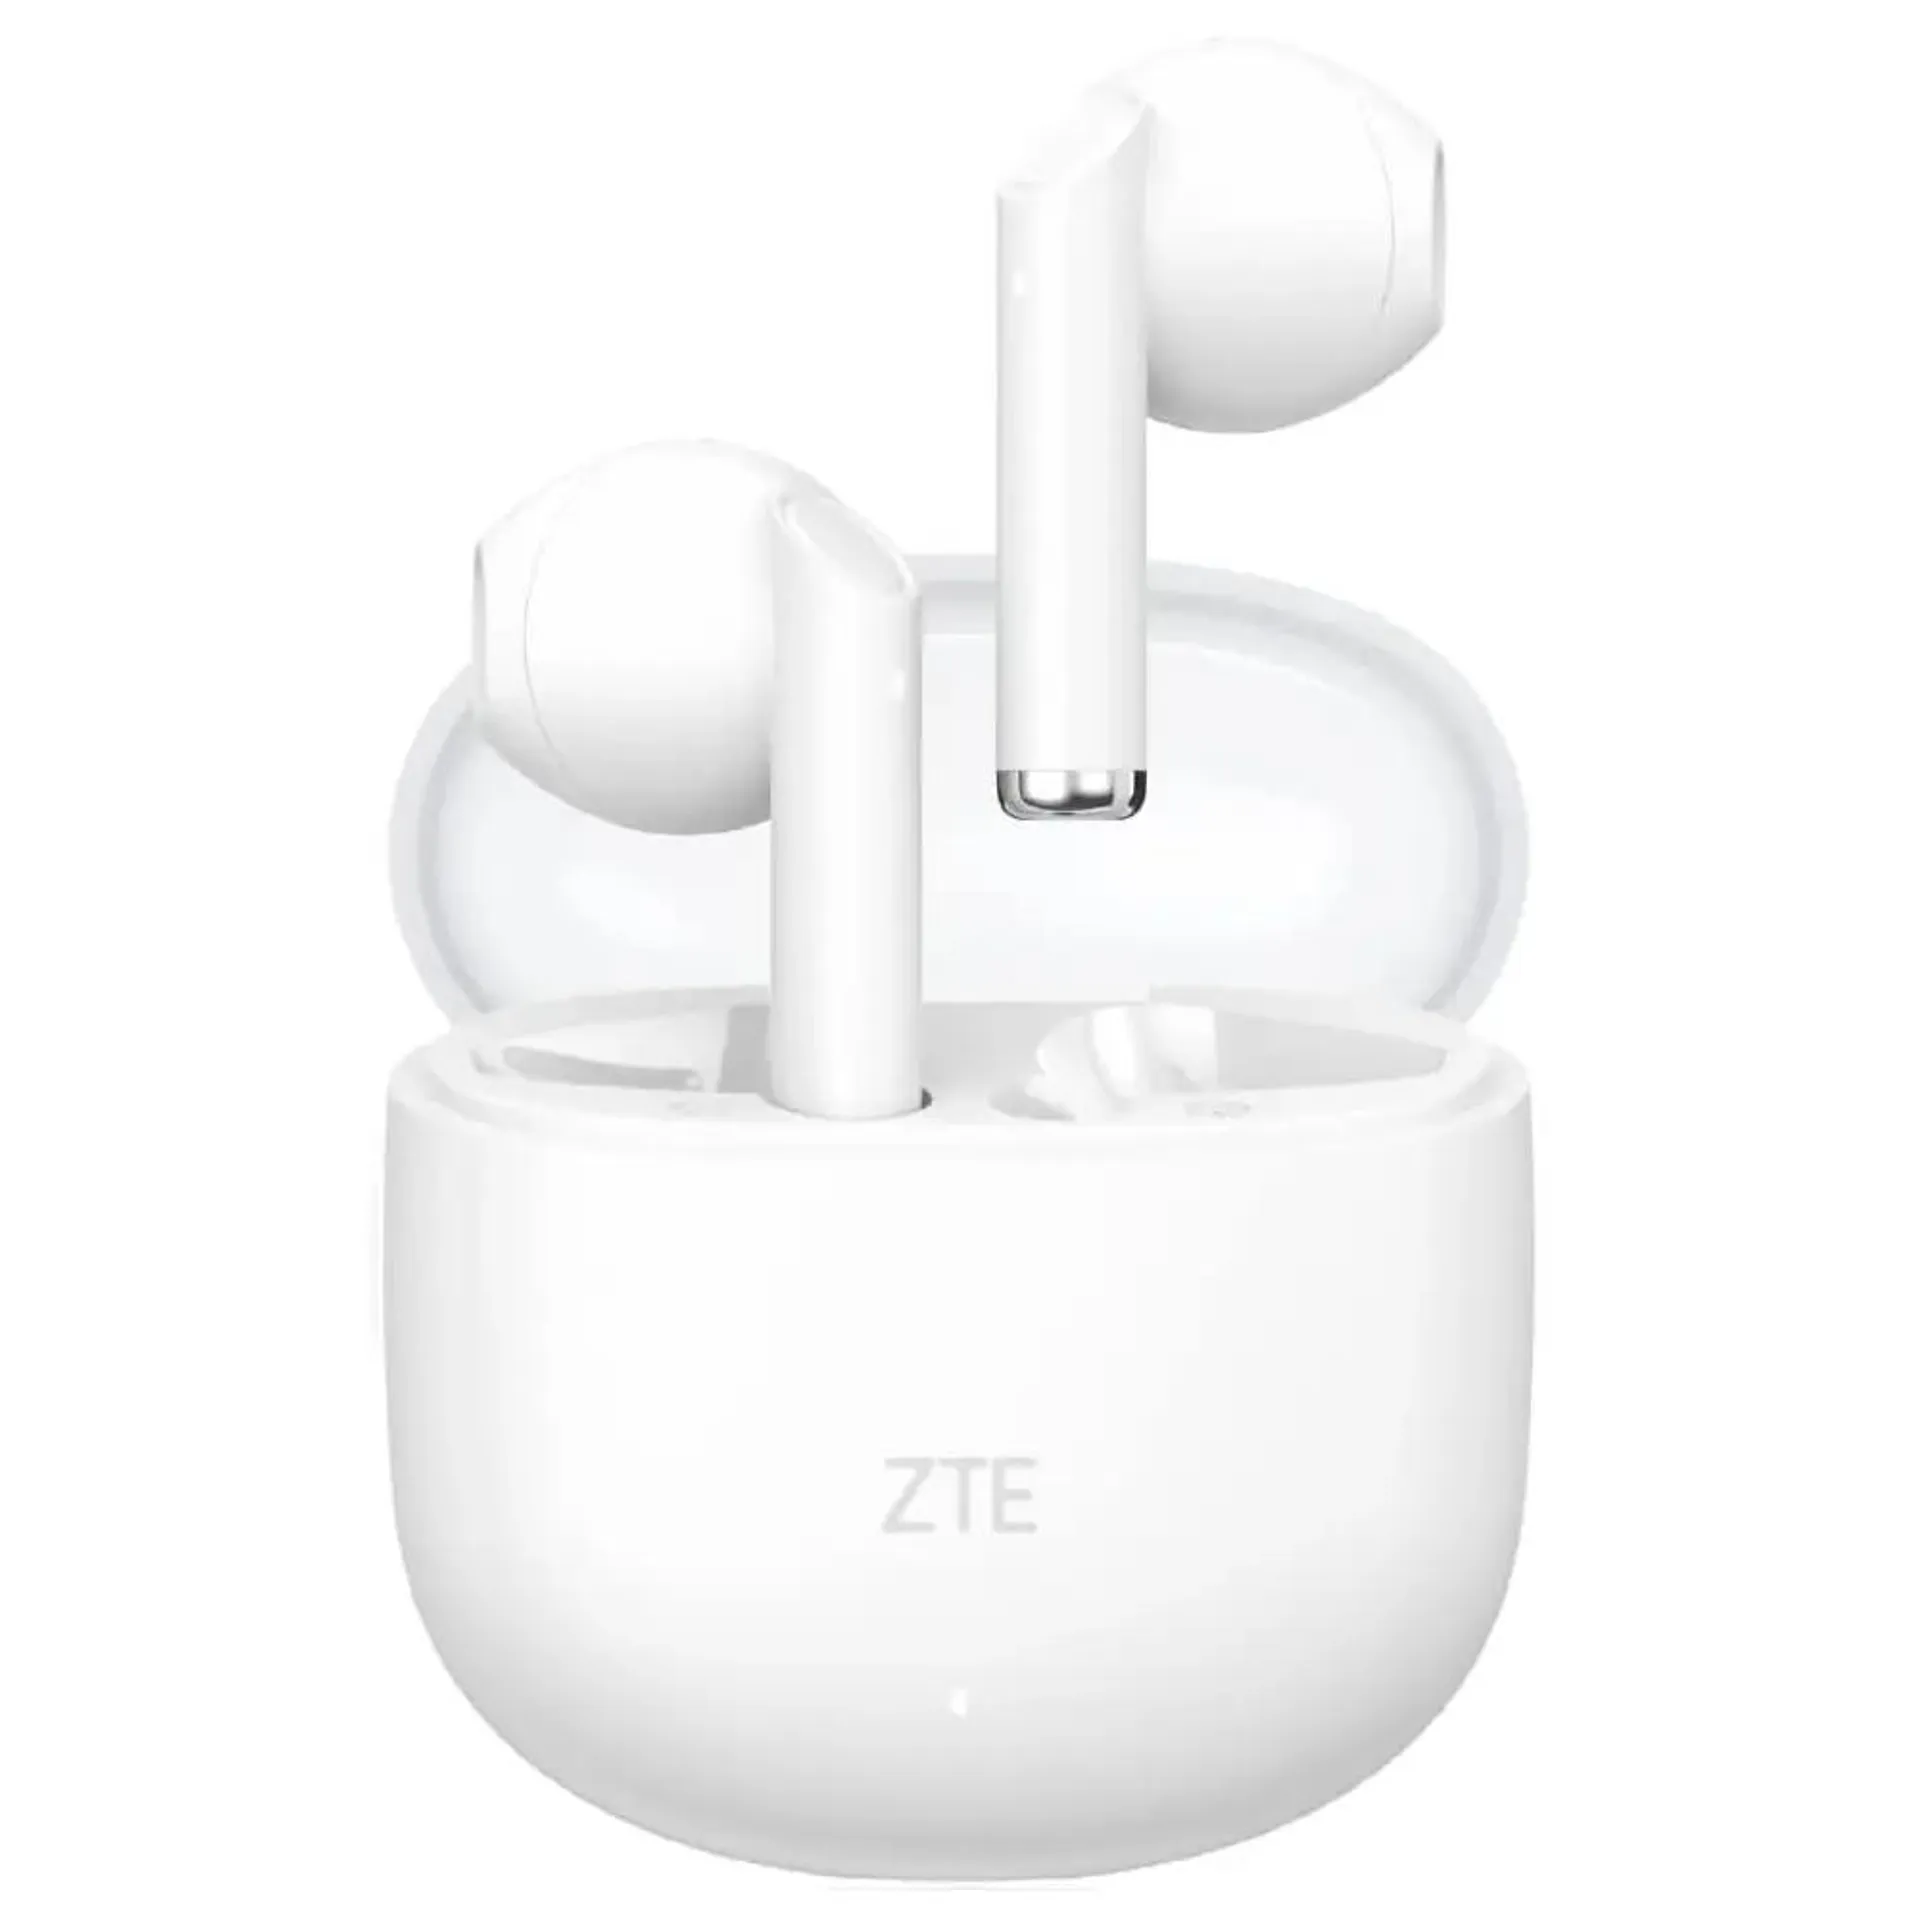 ZTE Buds 2 TWS Auriculares Bluetooth